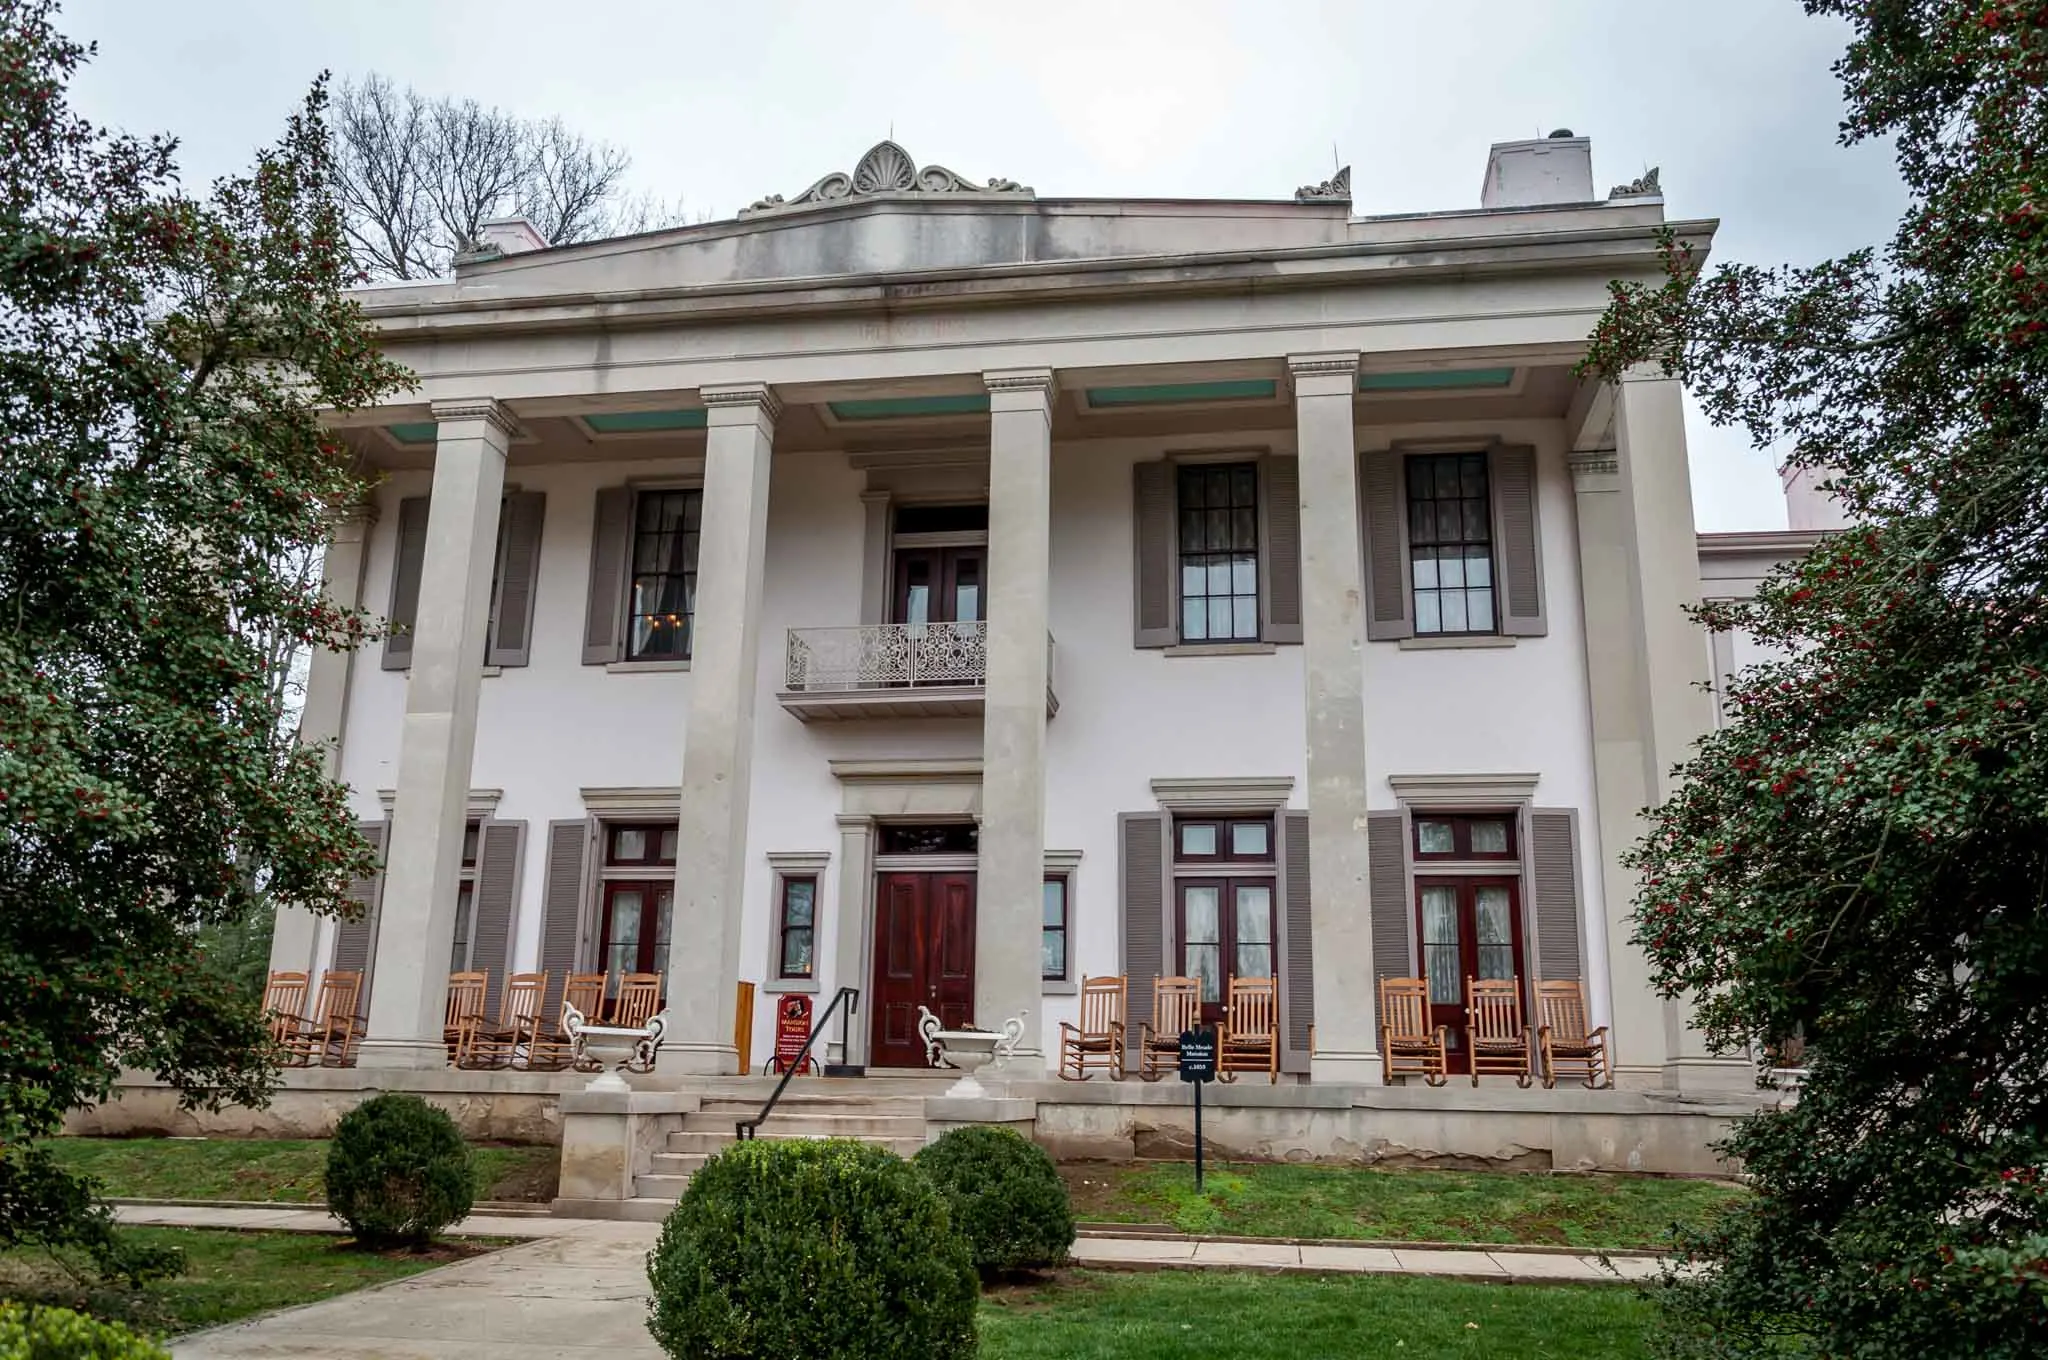 Belle Meade mansion in Nashville